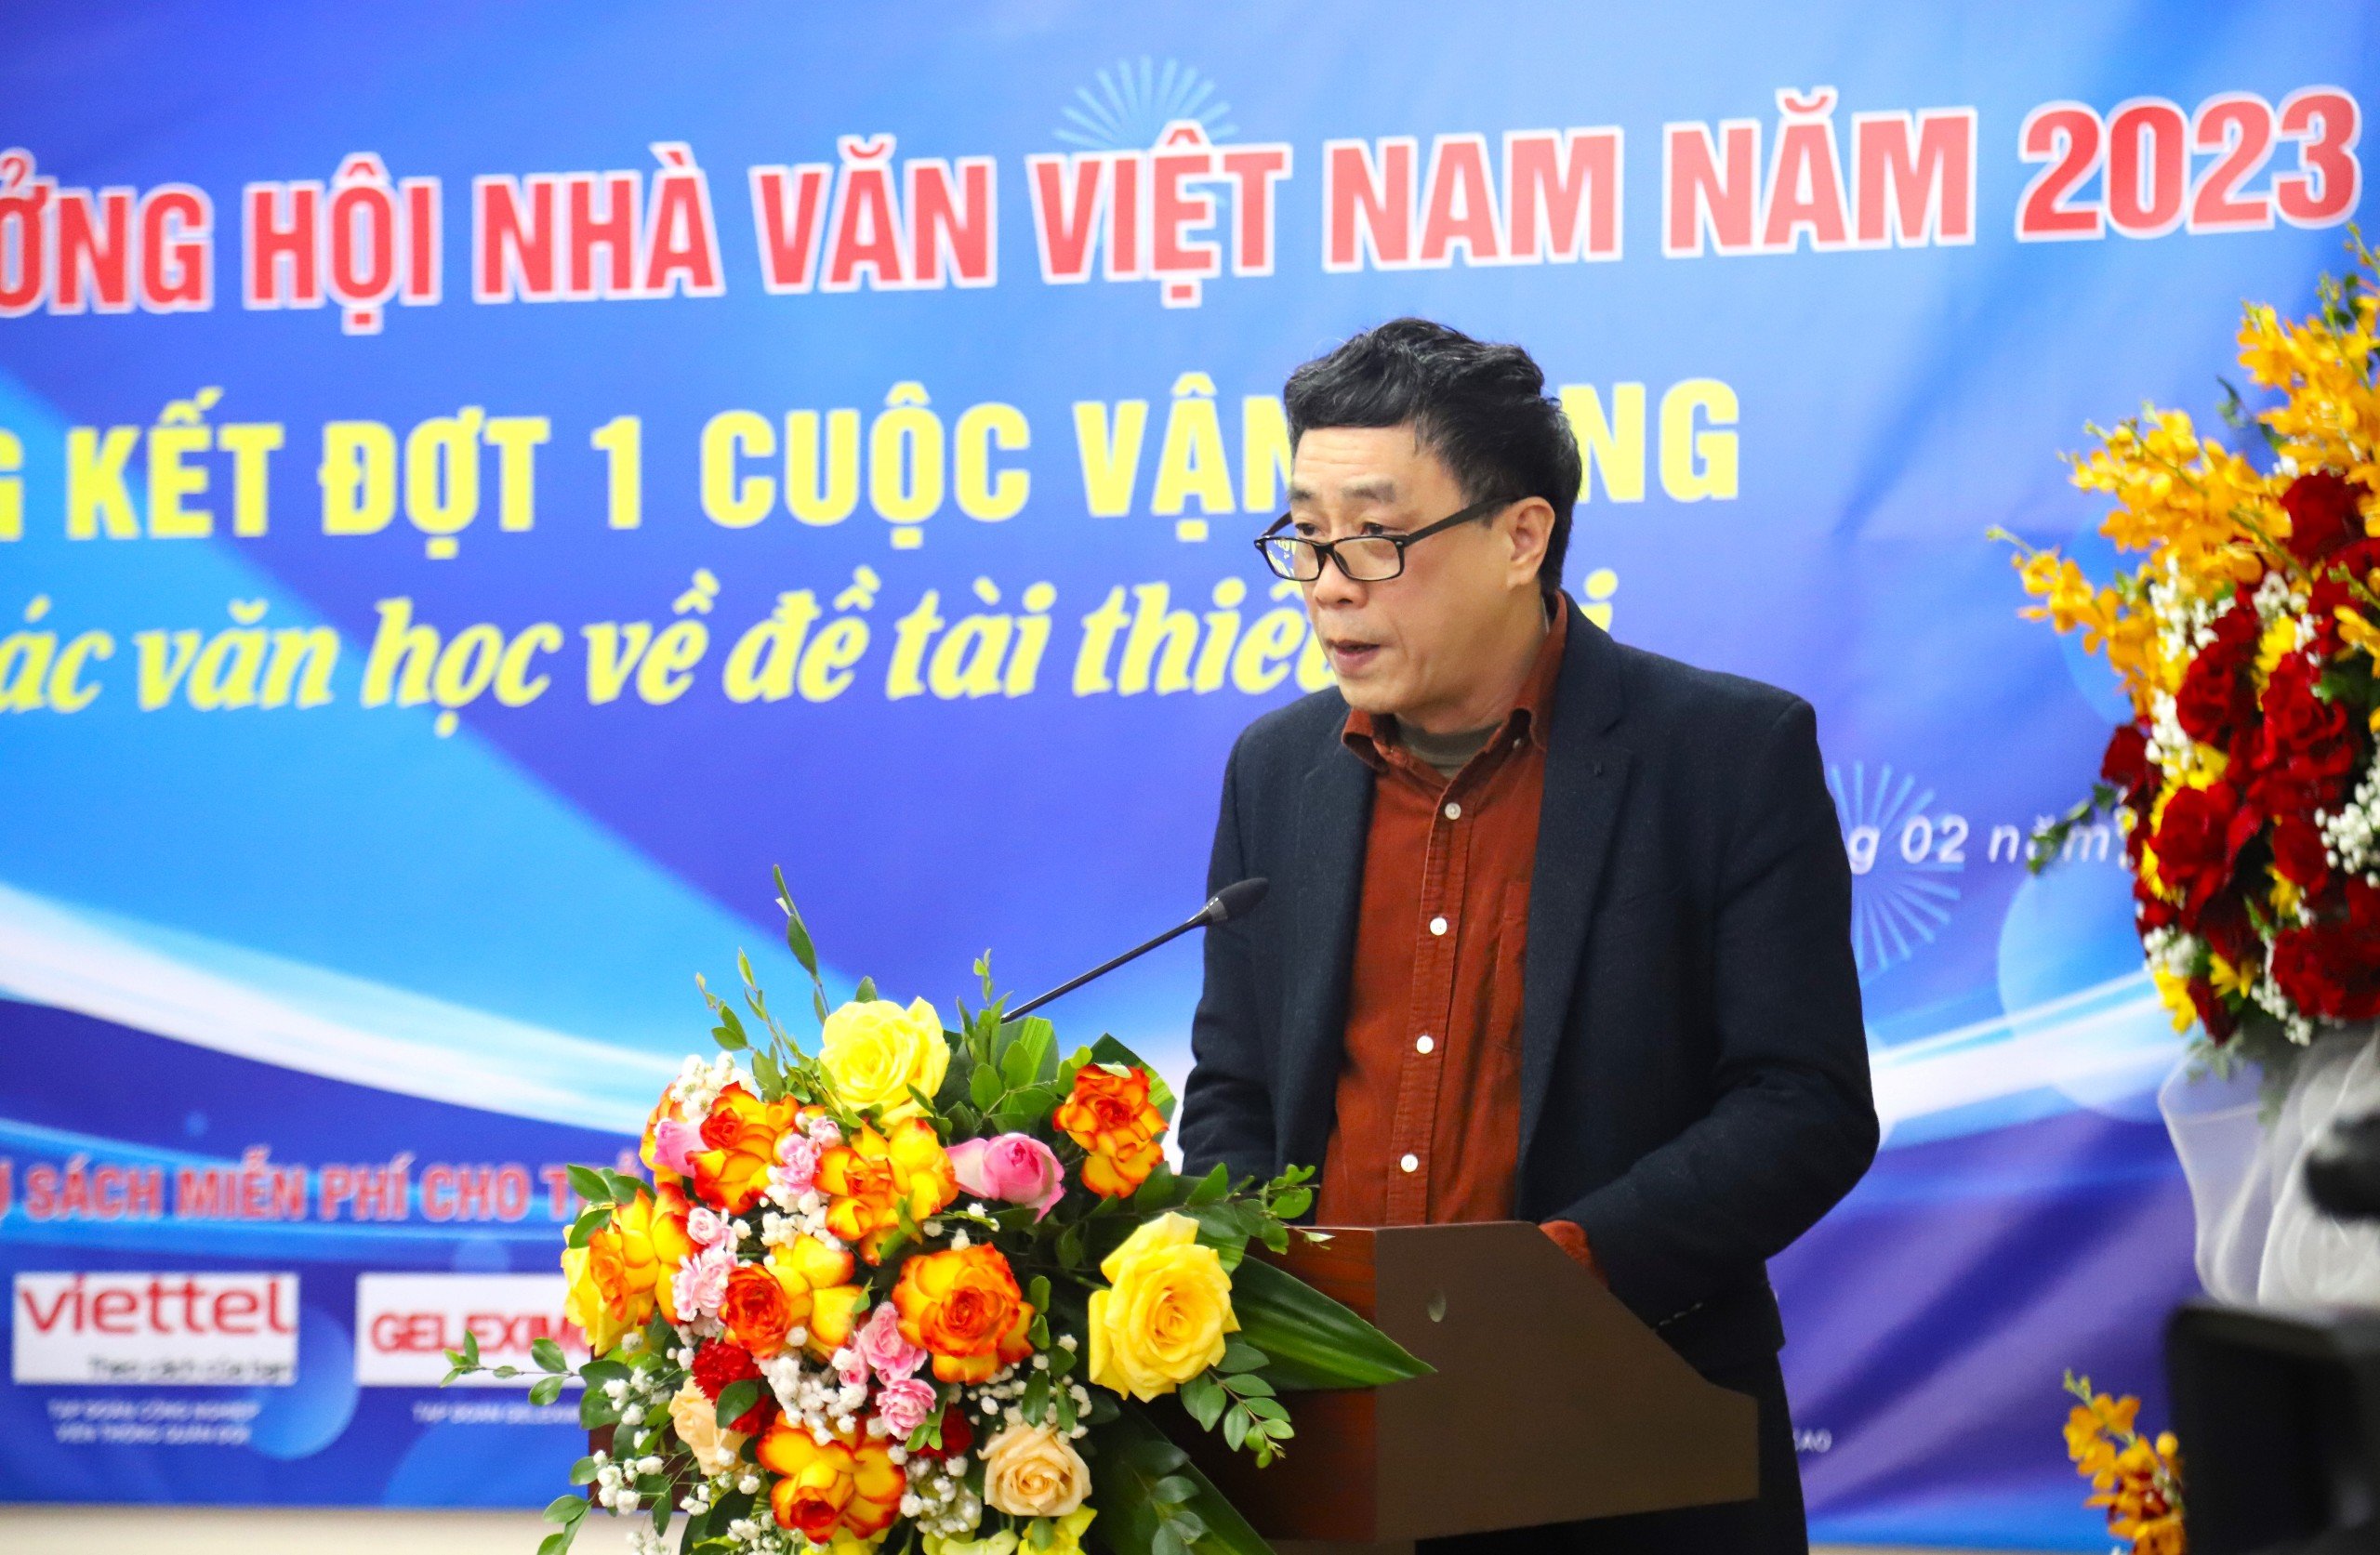 Giải thưởng Hội Nhà văn Việt Nam 2023: Khẳng định bản lĩnh của văn học - 2